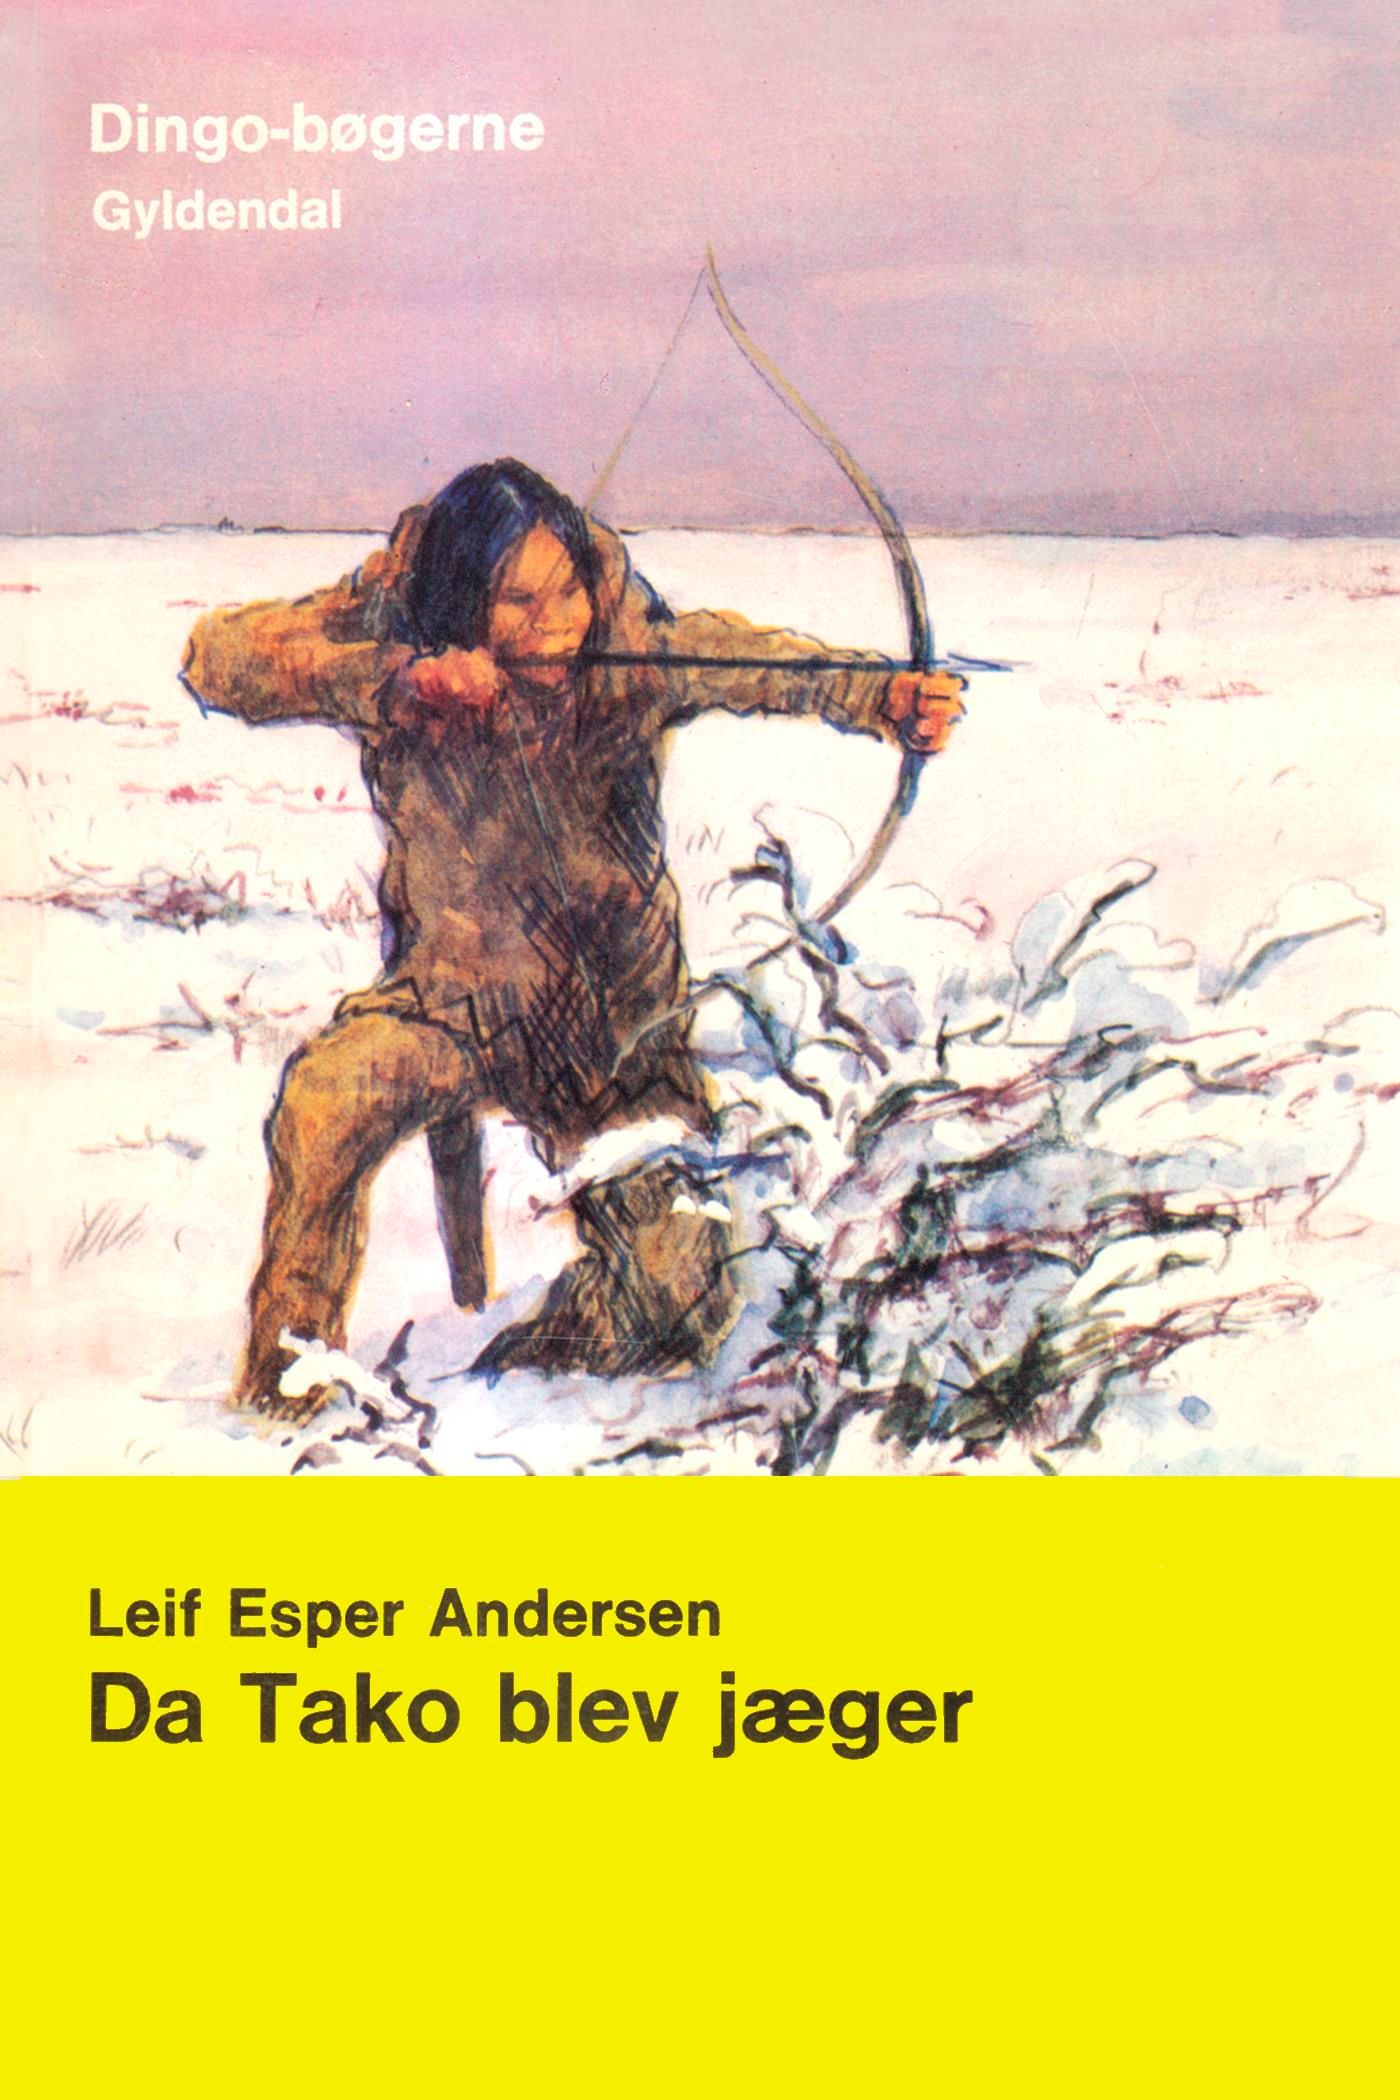 Da Tako blev jæger, eBook by Leif Esper Andersen